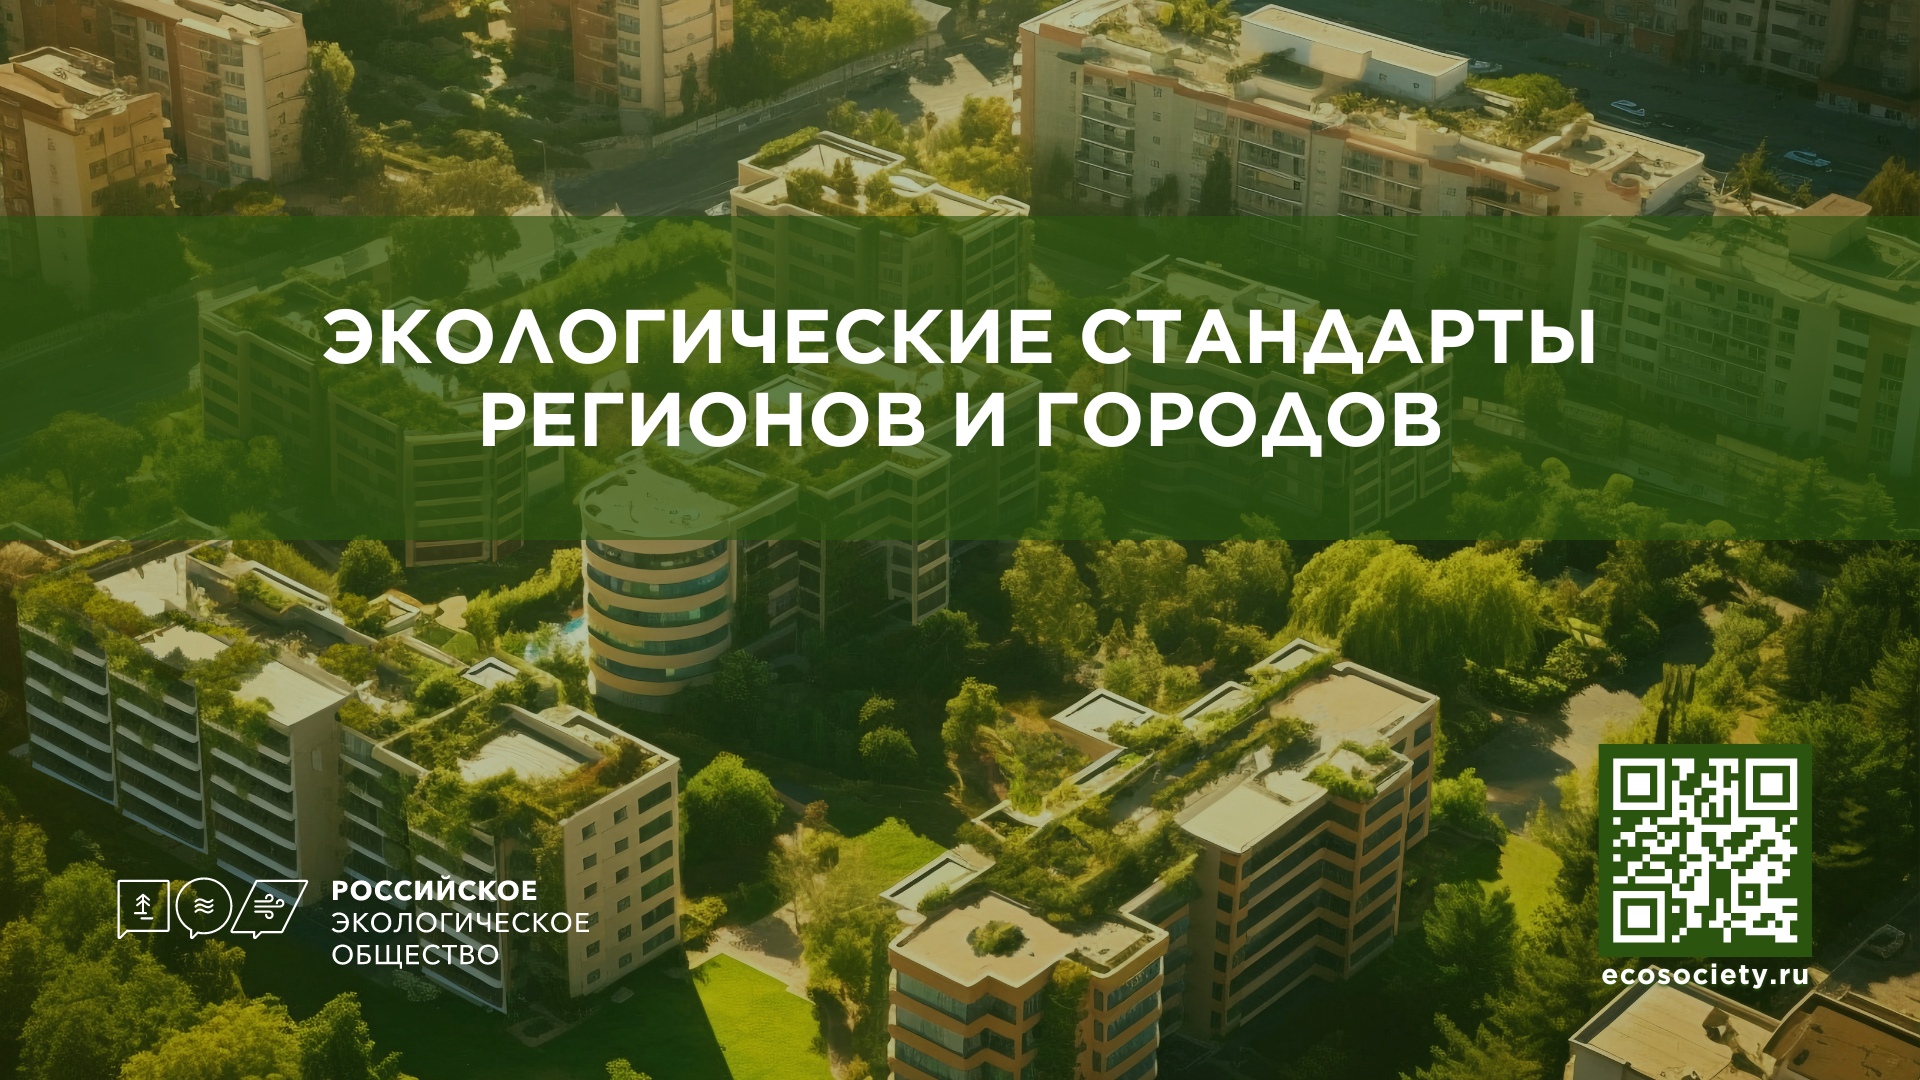 В ТОП-1000 «Сильные идеи для нового времени» вошла инициатива Российского экологического общества - «Экологические стандарты регионов и городов»